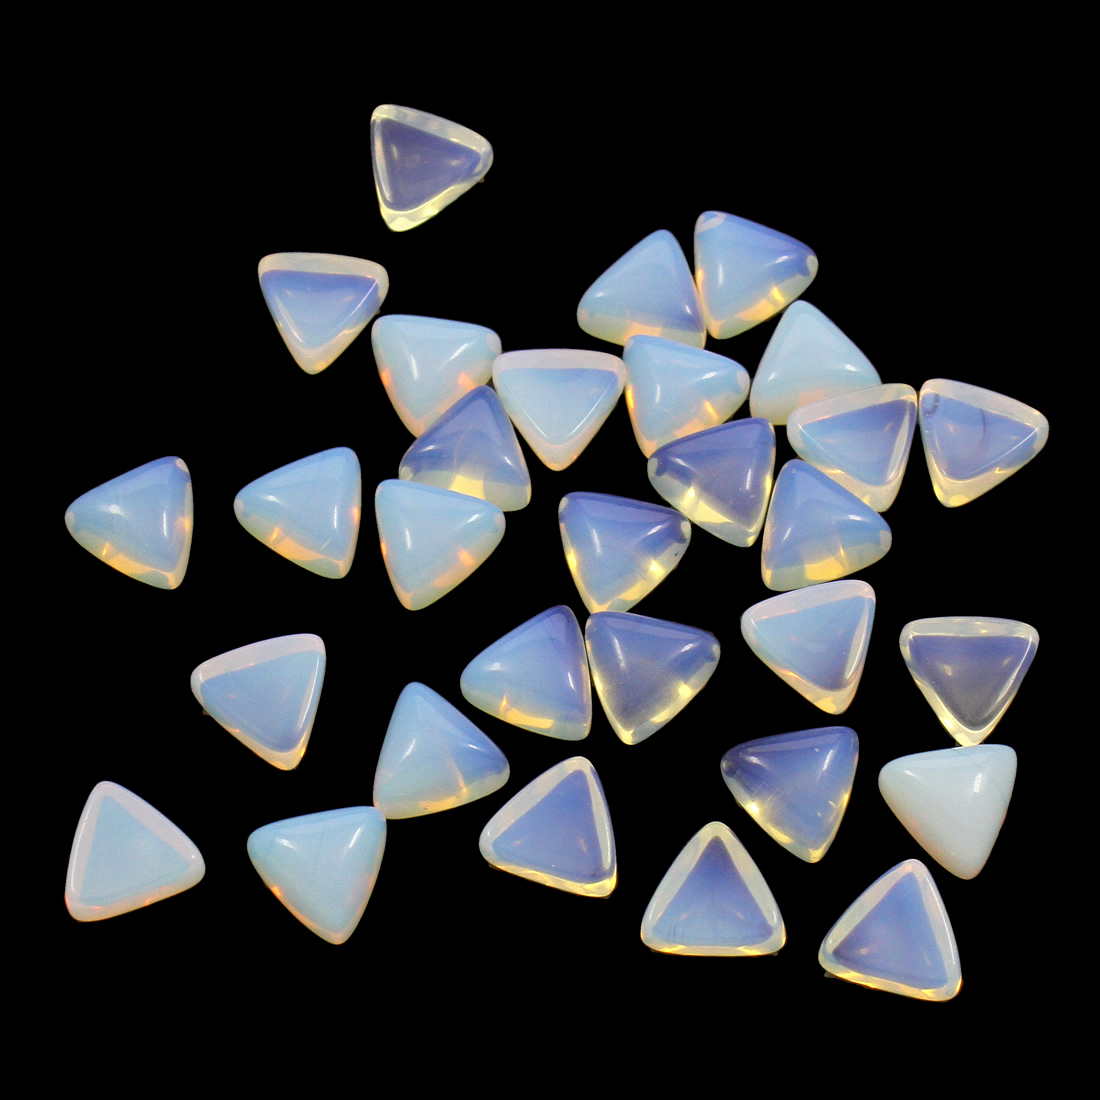 Sea Opal